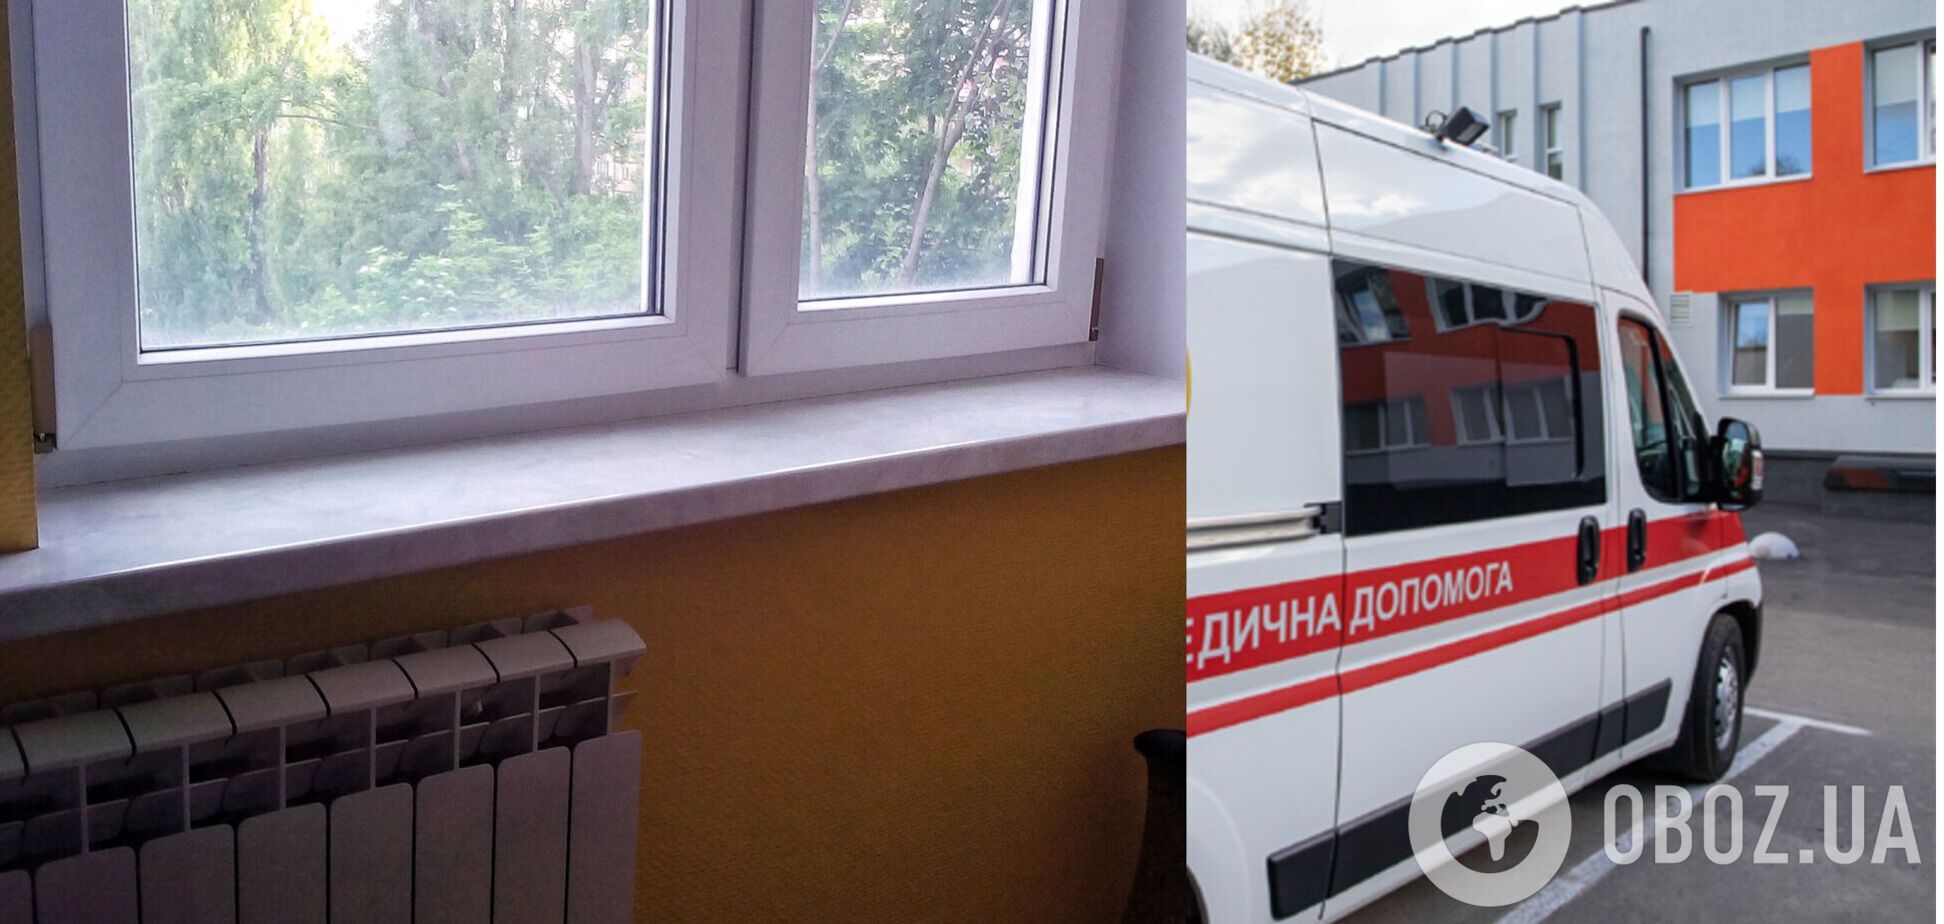 В Одессе 15-летняя девушка выпрыгнула с 7-го этажа – СМИ